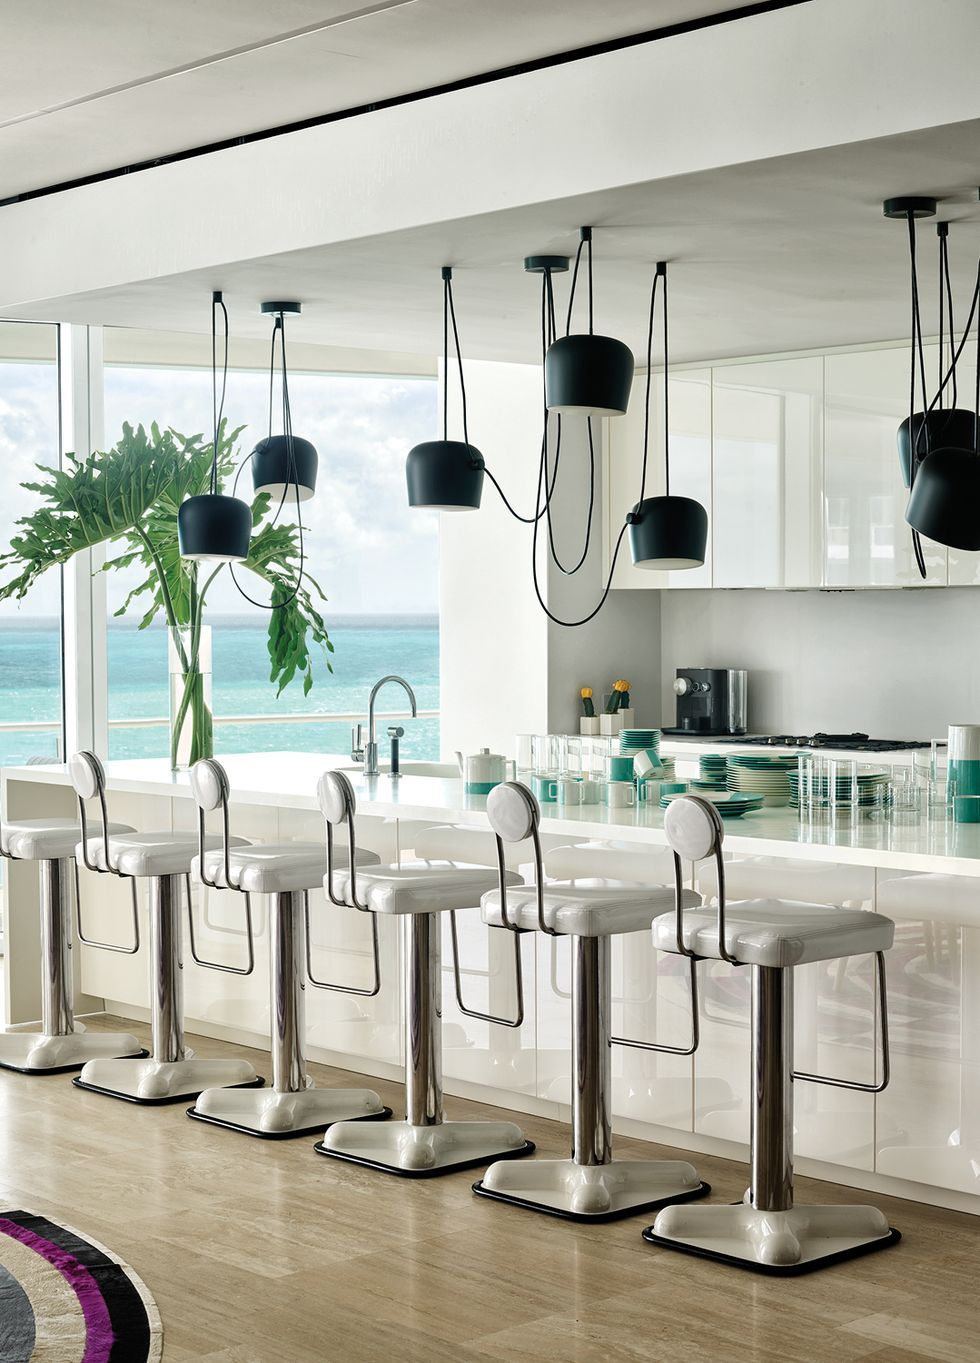 55 Inspiring Modern Kitchens Contemporary Kitchen Ideas 2020